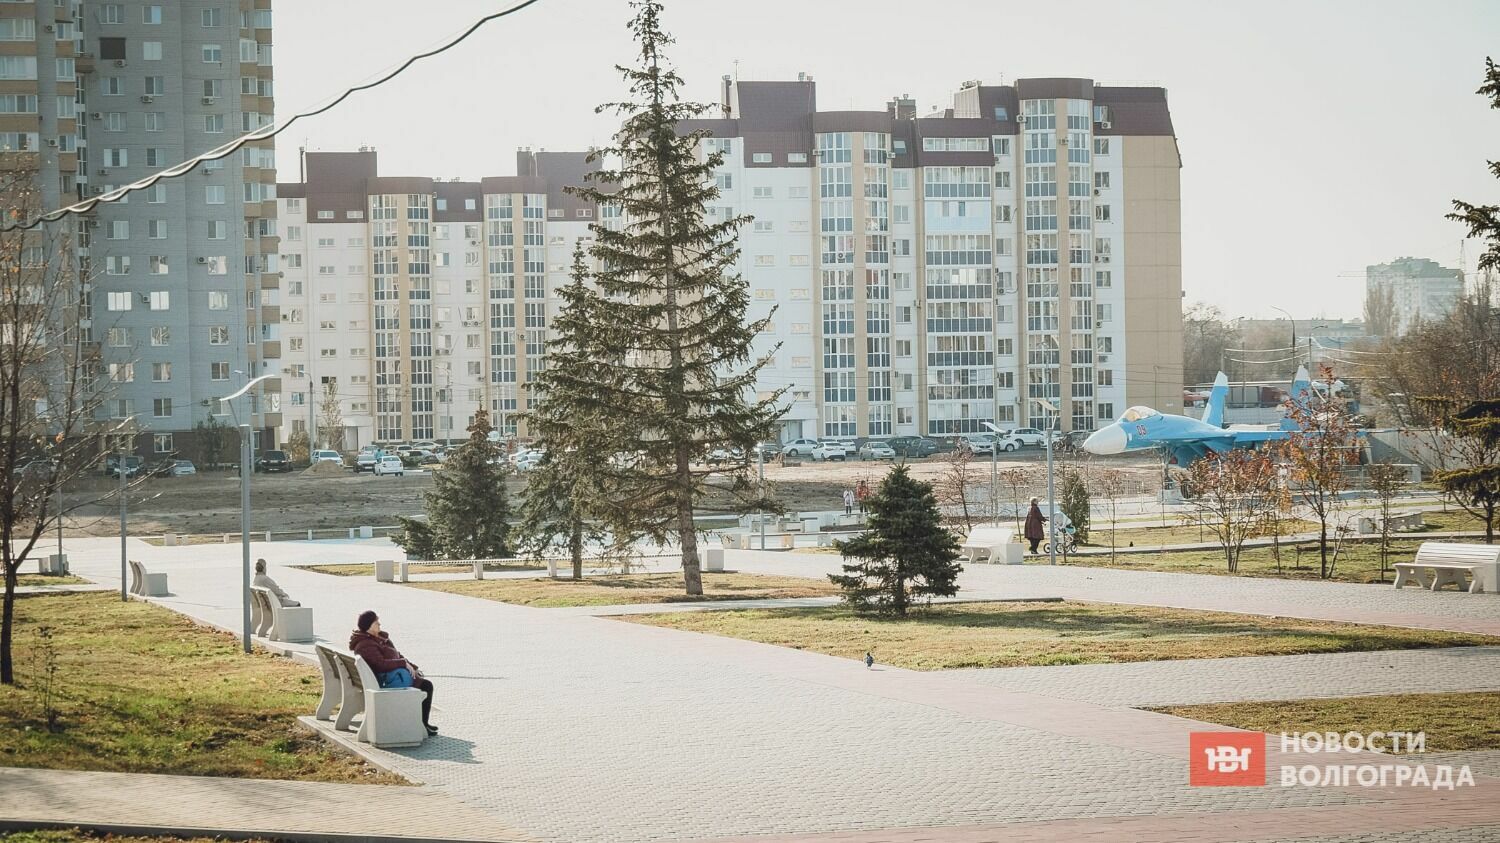 Основные показатели в Дзержинском также выше средних по городу